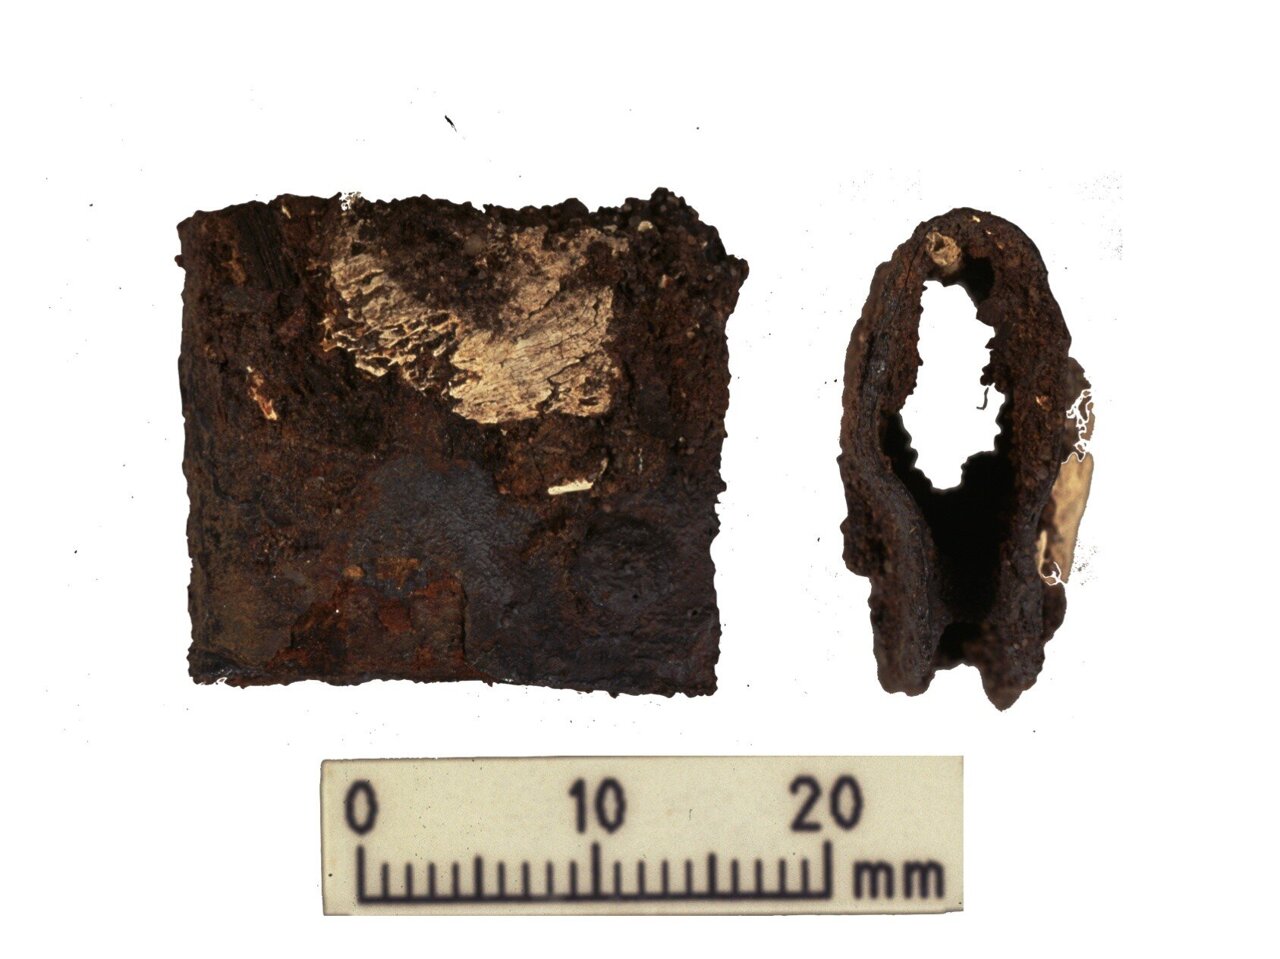 在 1998-2000 年的原始發掘中發現的維京戰士盾牌扣。 在最近的研究中，這個扣環與人類和動物遺骸在同一個墳墓中被發現。